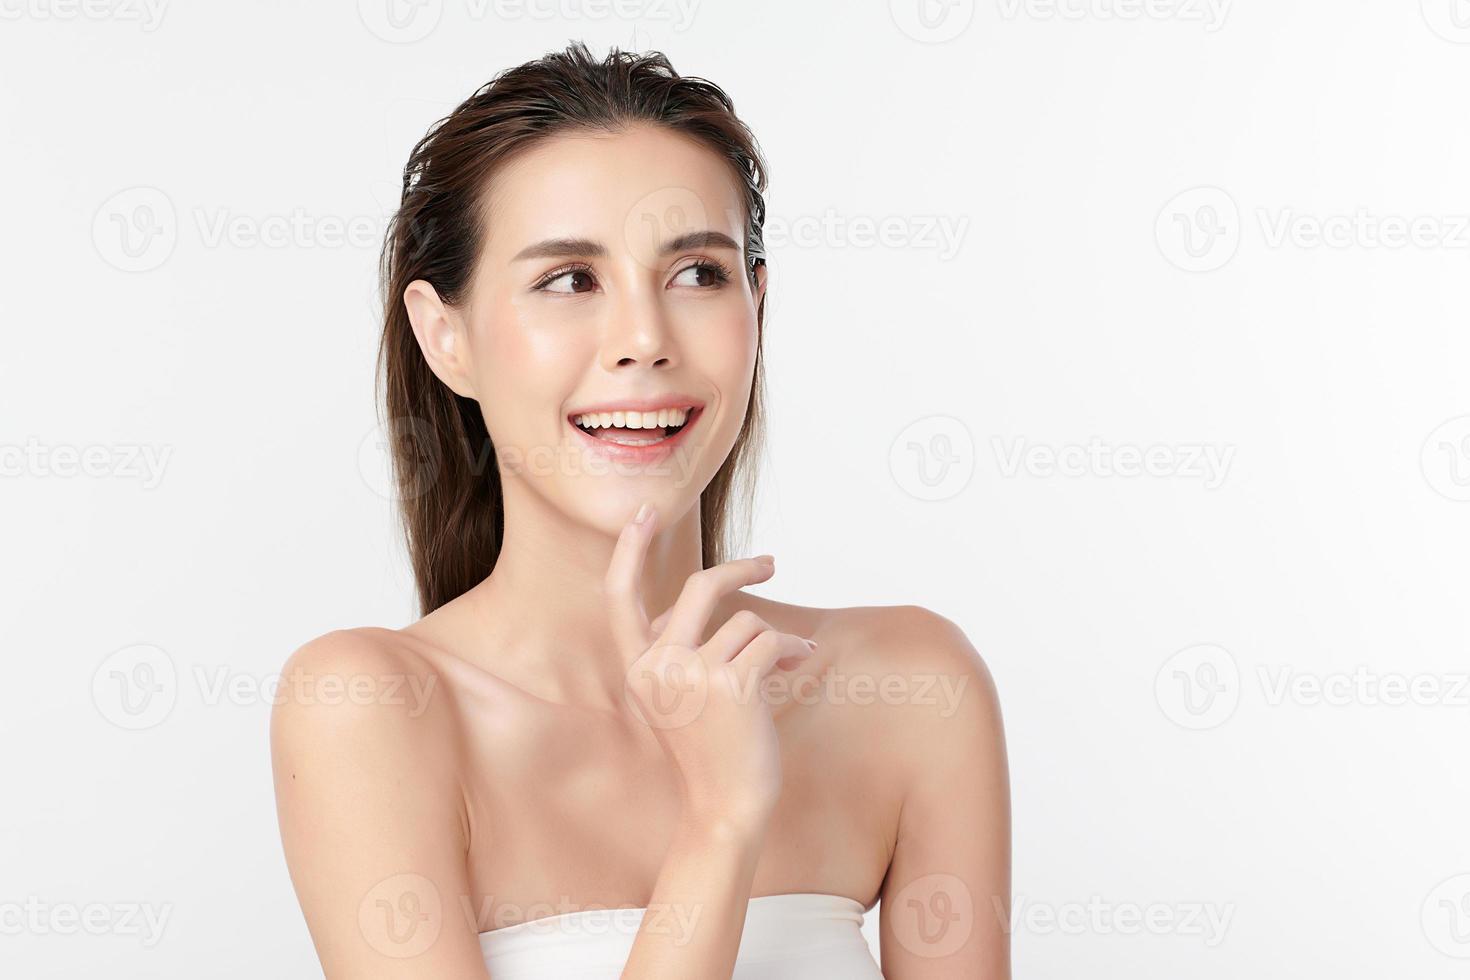 belle jeune femme asiatique avec une peau fraîche et propre sur fond blanc, soins du visage, soins du visage, cosmétologie, beauté et spa, portrait de femmes asiatiques. photo